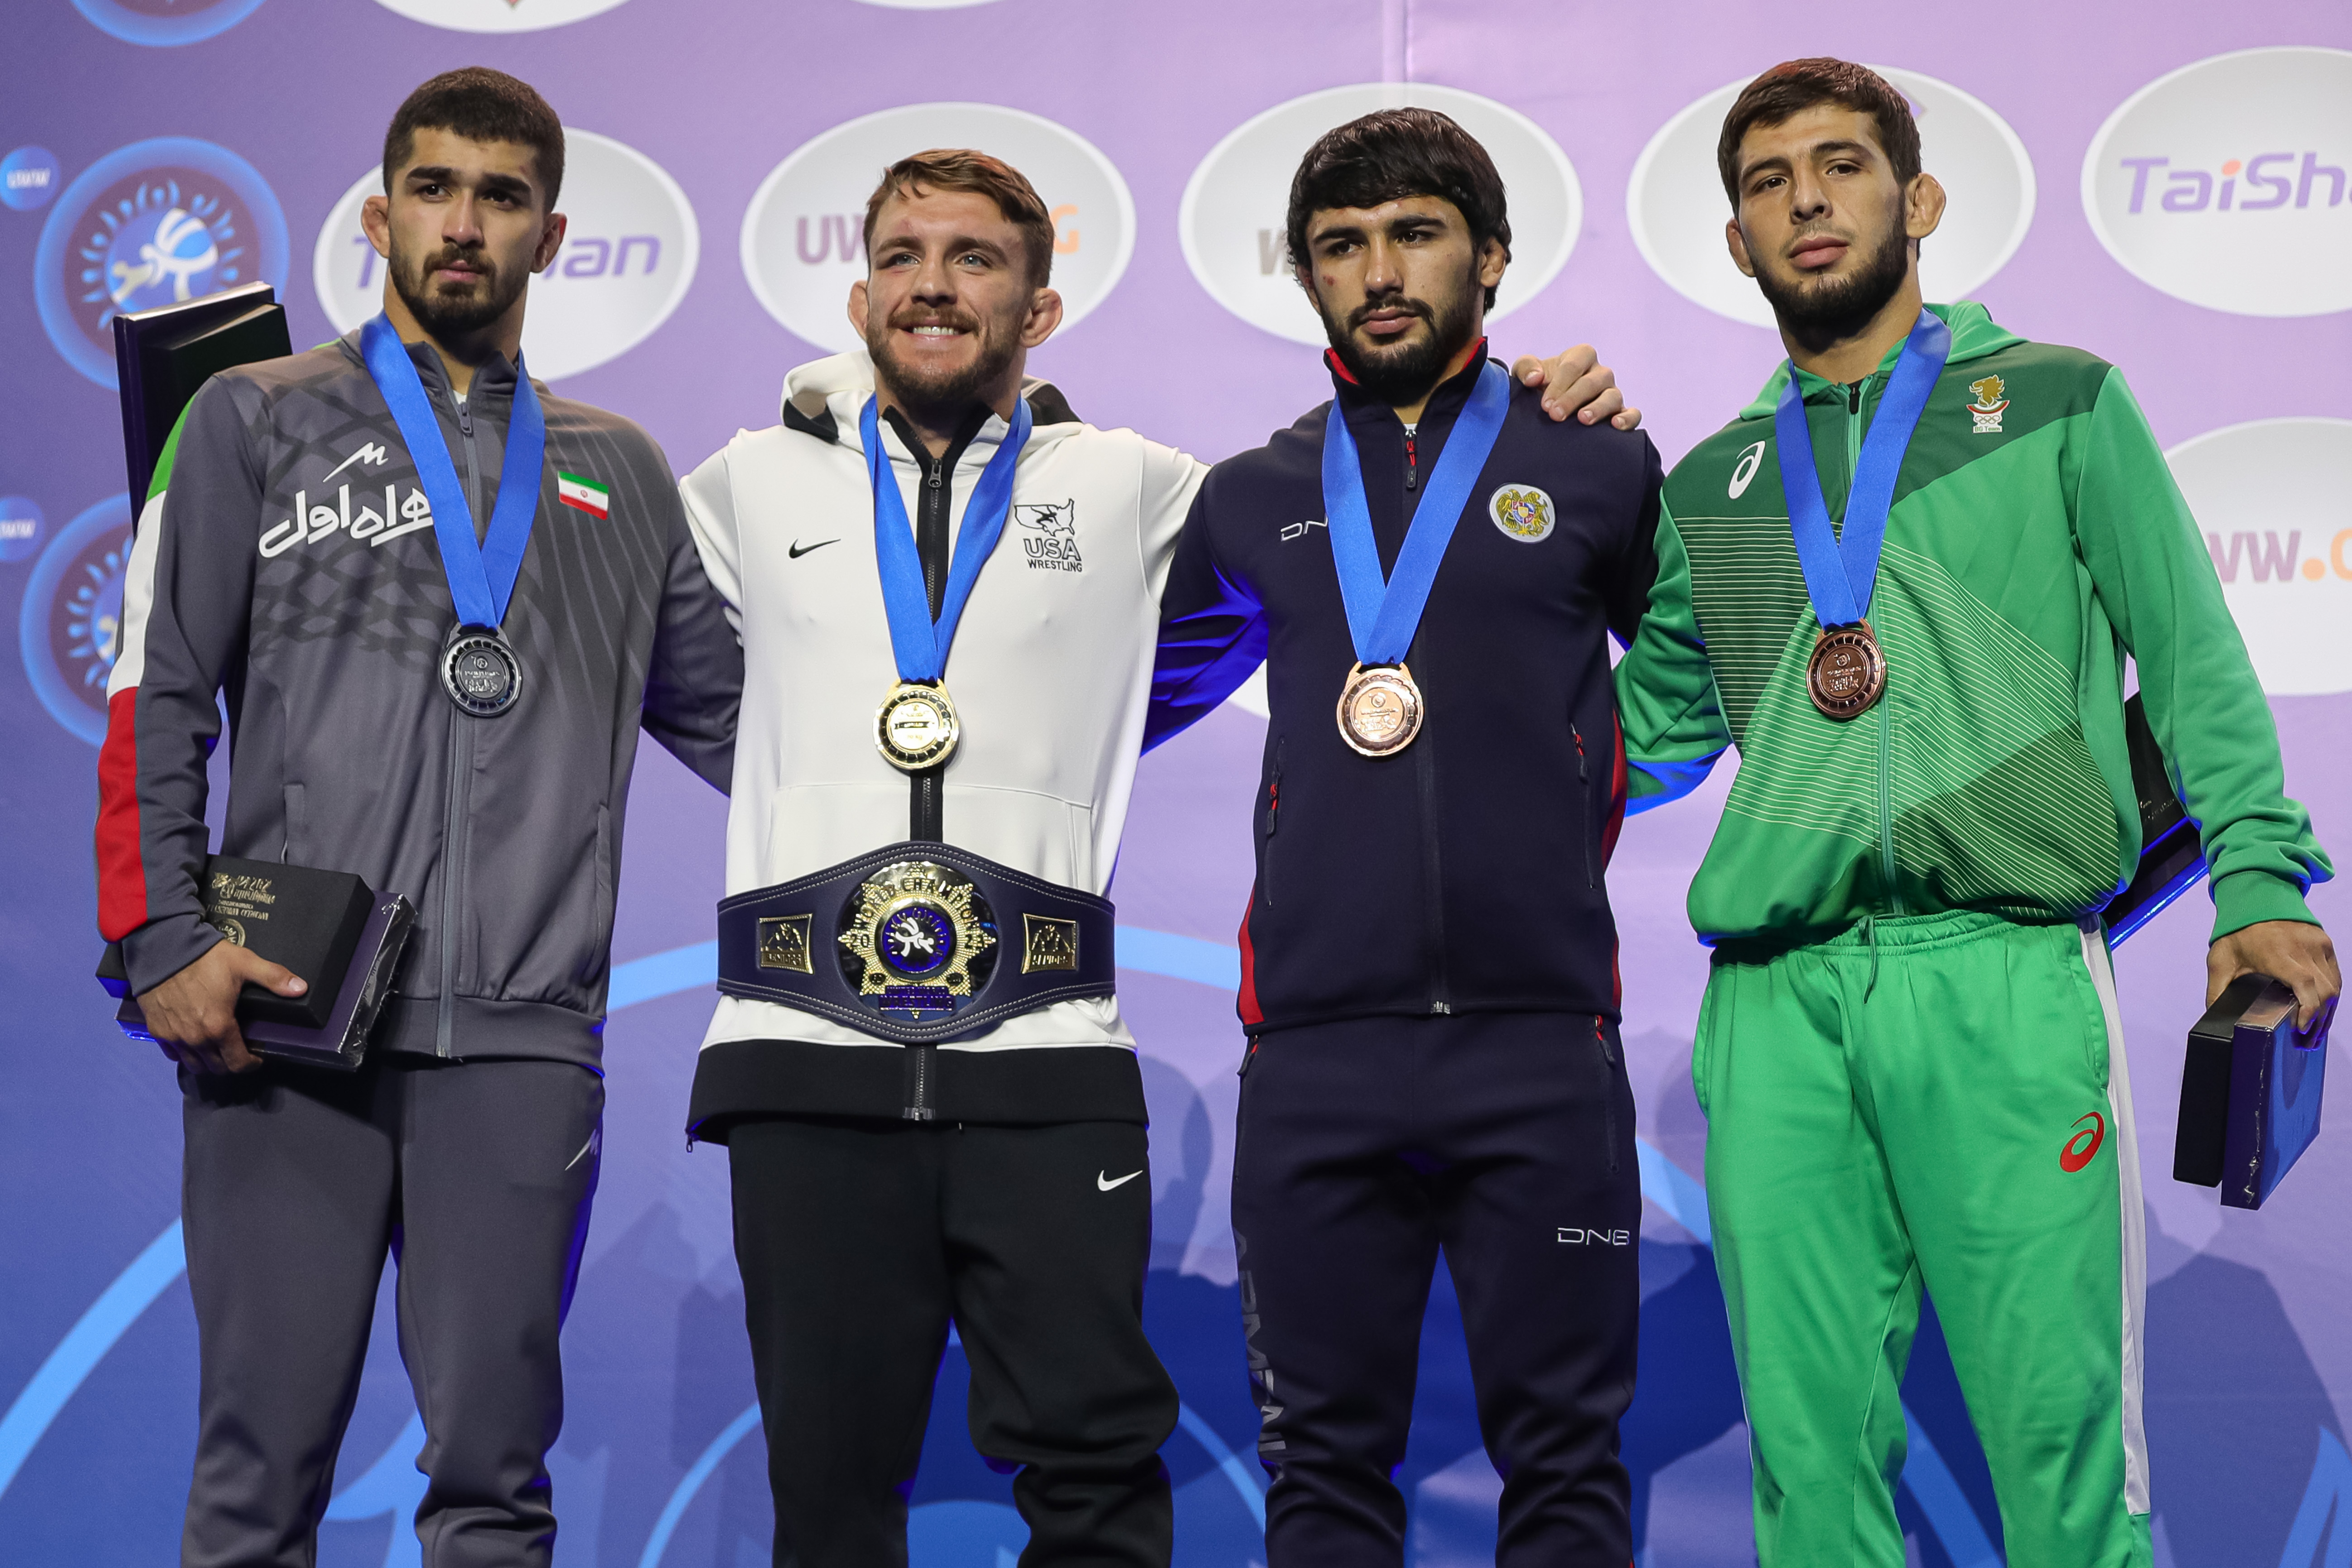 Рамазан Рамазанов с първи медал от световното